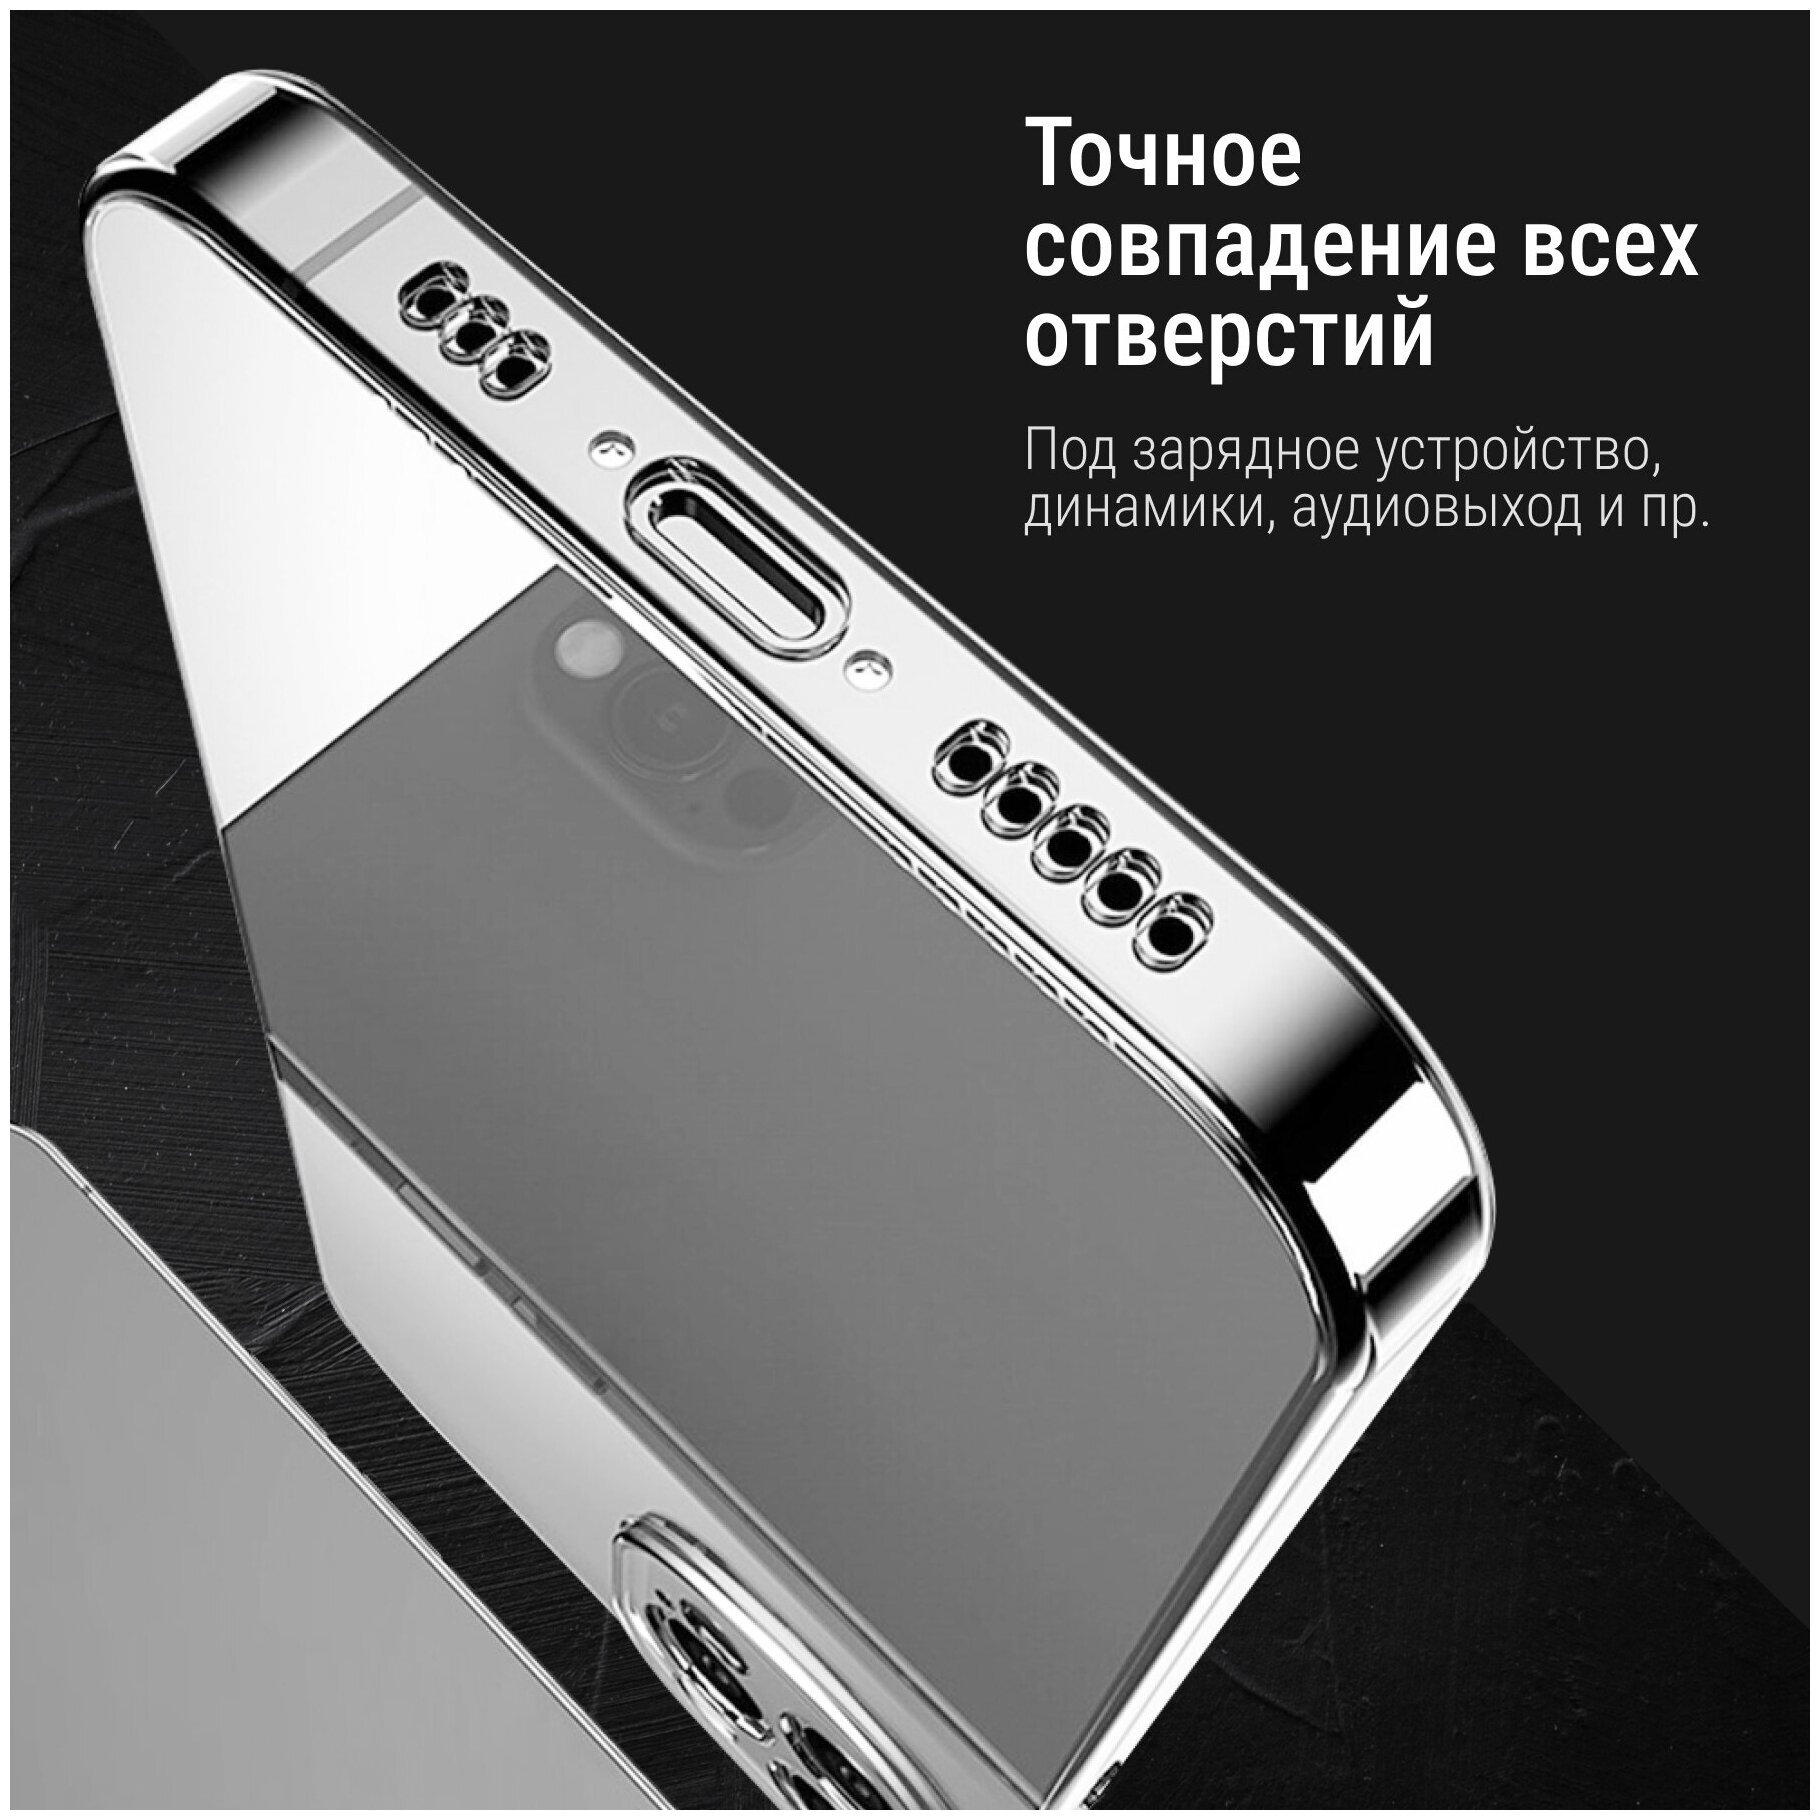 Ультратонкий силиконовый чехол для телефона Samsung Galaxy A20 и Samsung Galaxy A30 / Прозрачный защитный чехол для Самсунг Галакси А20 и А30